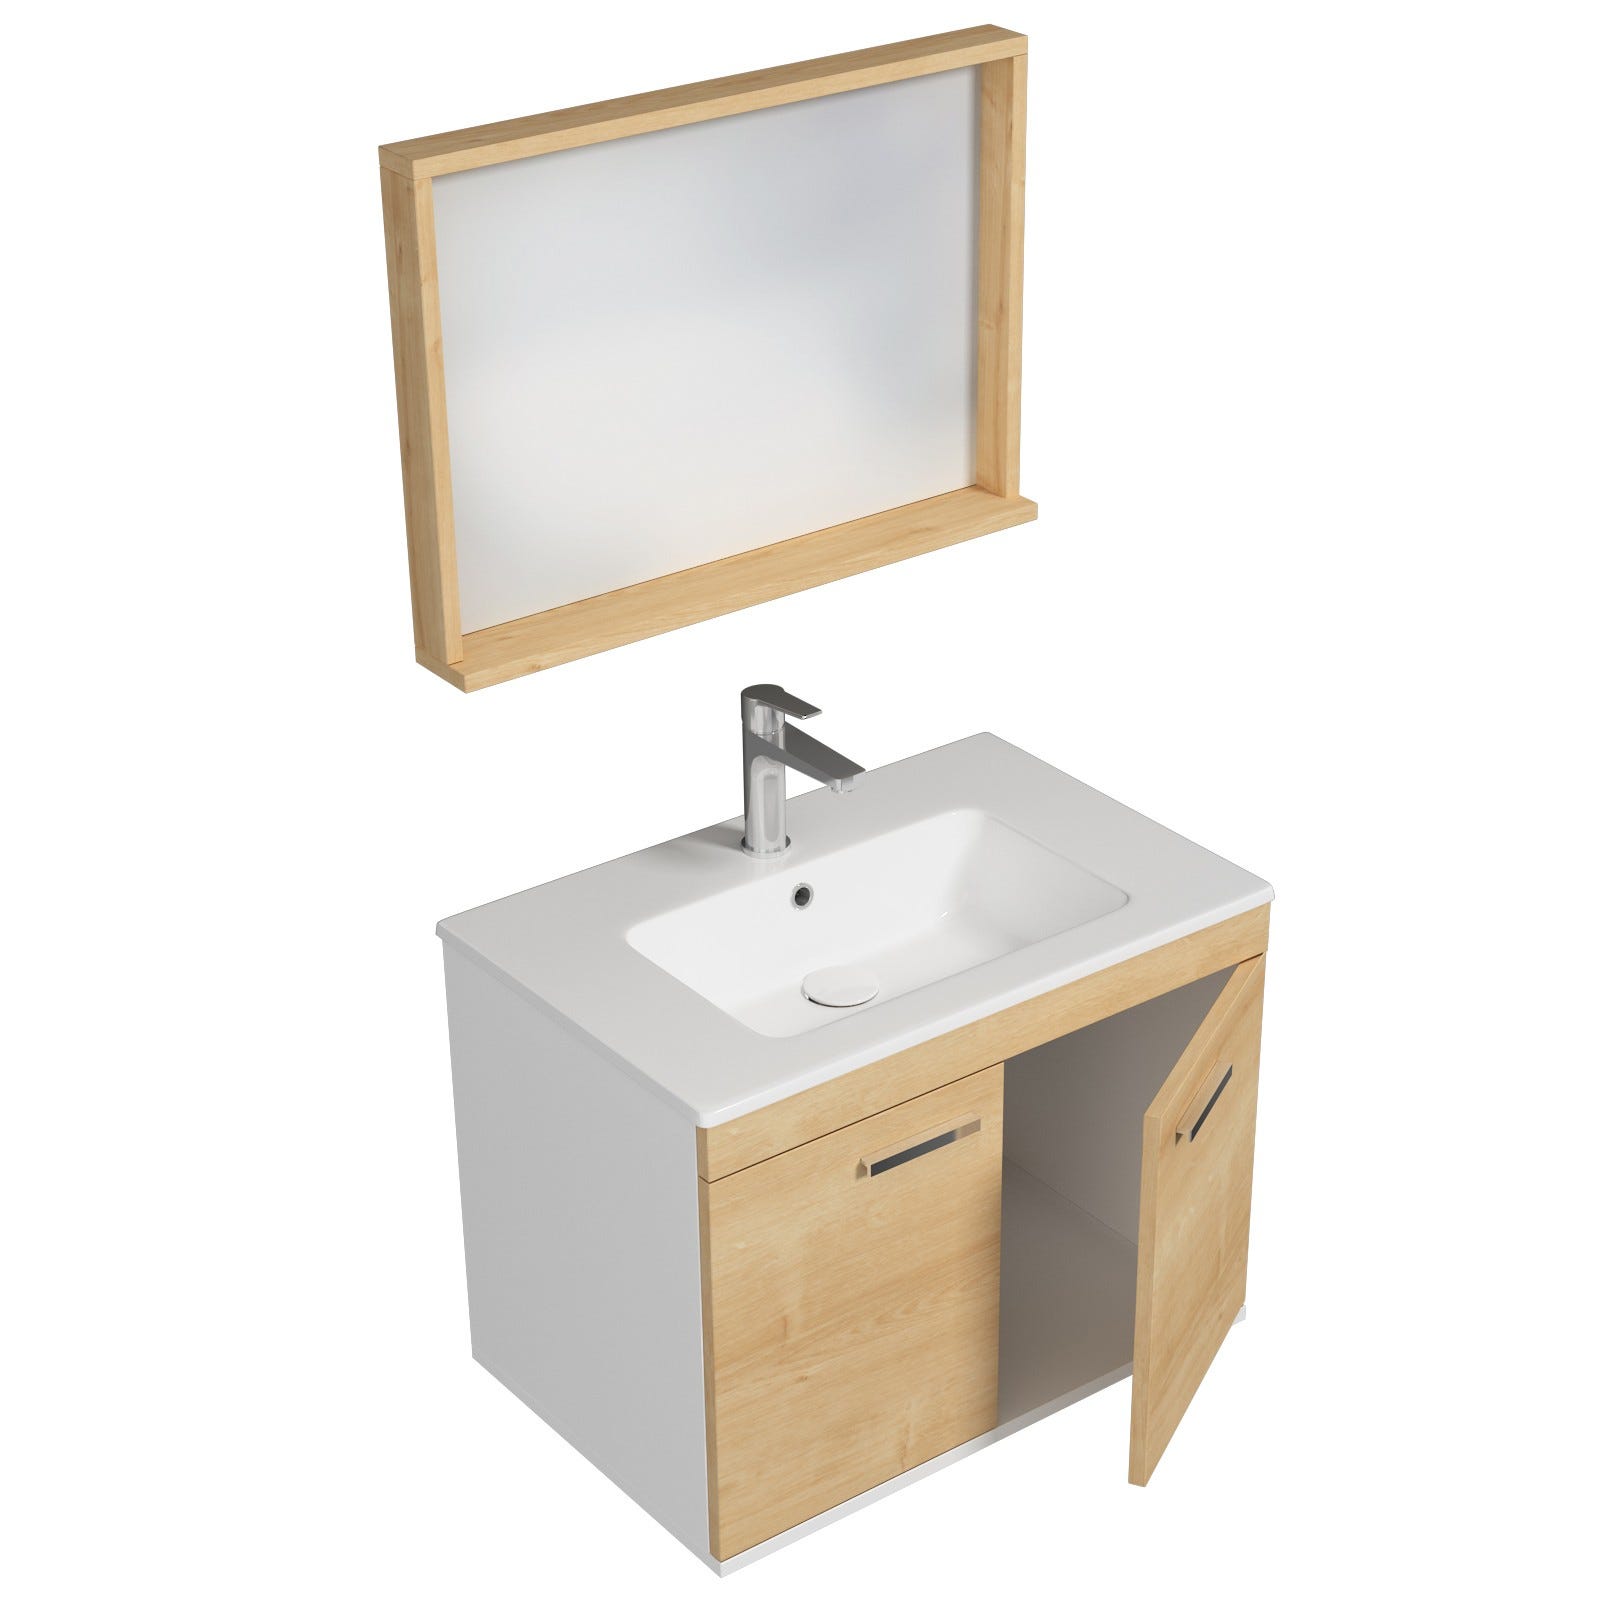 RUBITE Meuble salle de bain simple vasque 2 portes chêne clair largeur 70 cm + miroir cadre 1